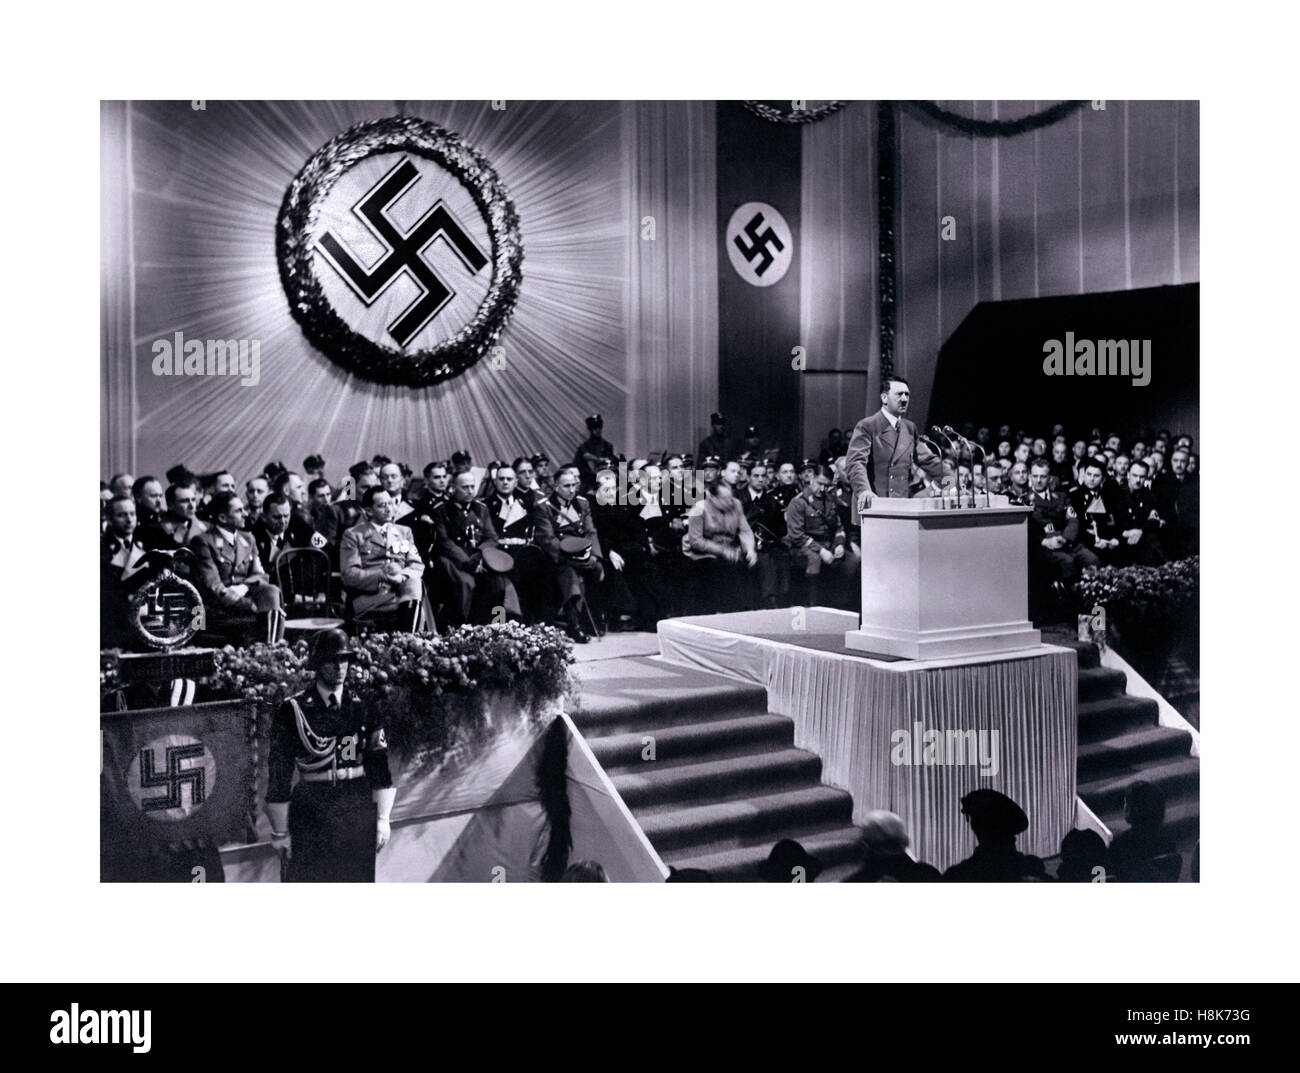 Adolf Hitler Discours, 1939 s'exprimant sous un grand emblème de la croix gammée lors d'un discours sur le podium avec d'autres partisans du parti nazi 1939 Berlin Allemagne Photo Stock - Alamy